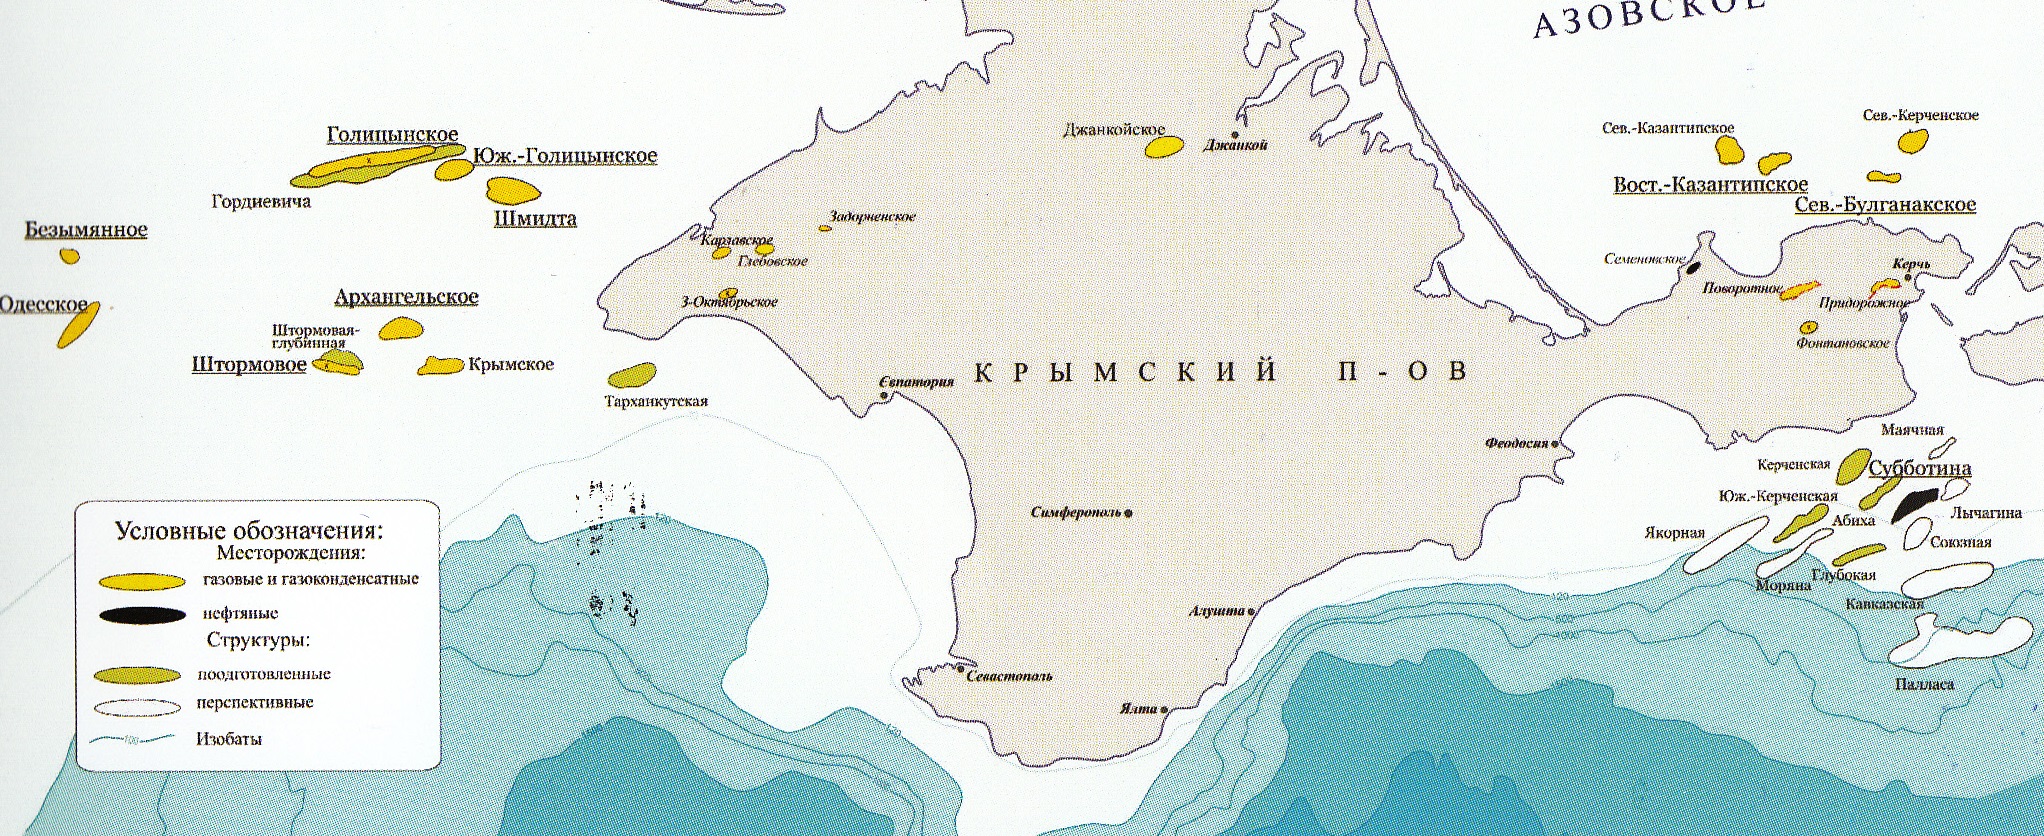 Месторождения нефти и газа в Крыму